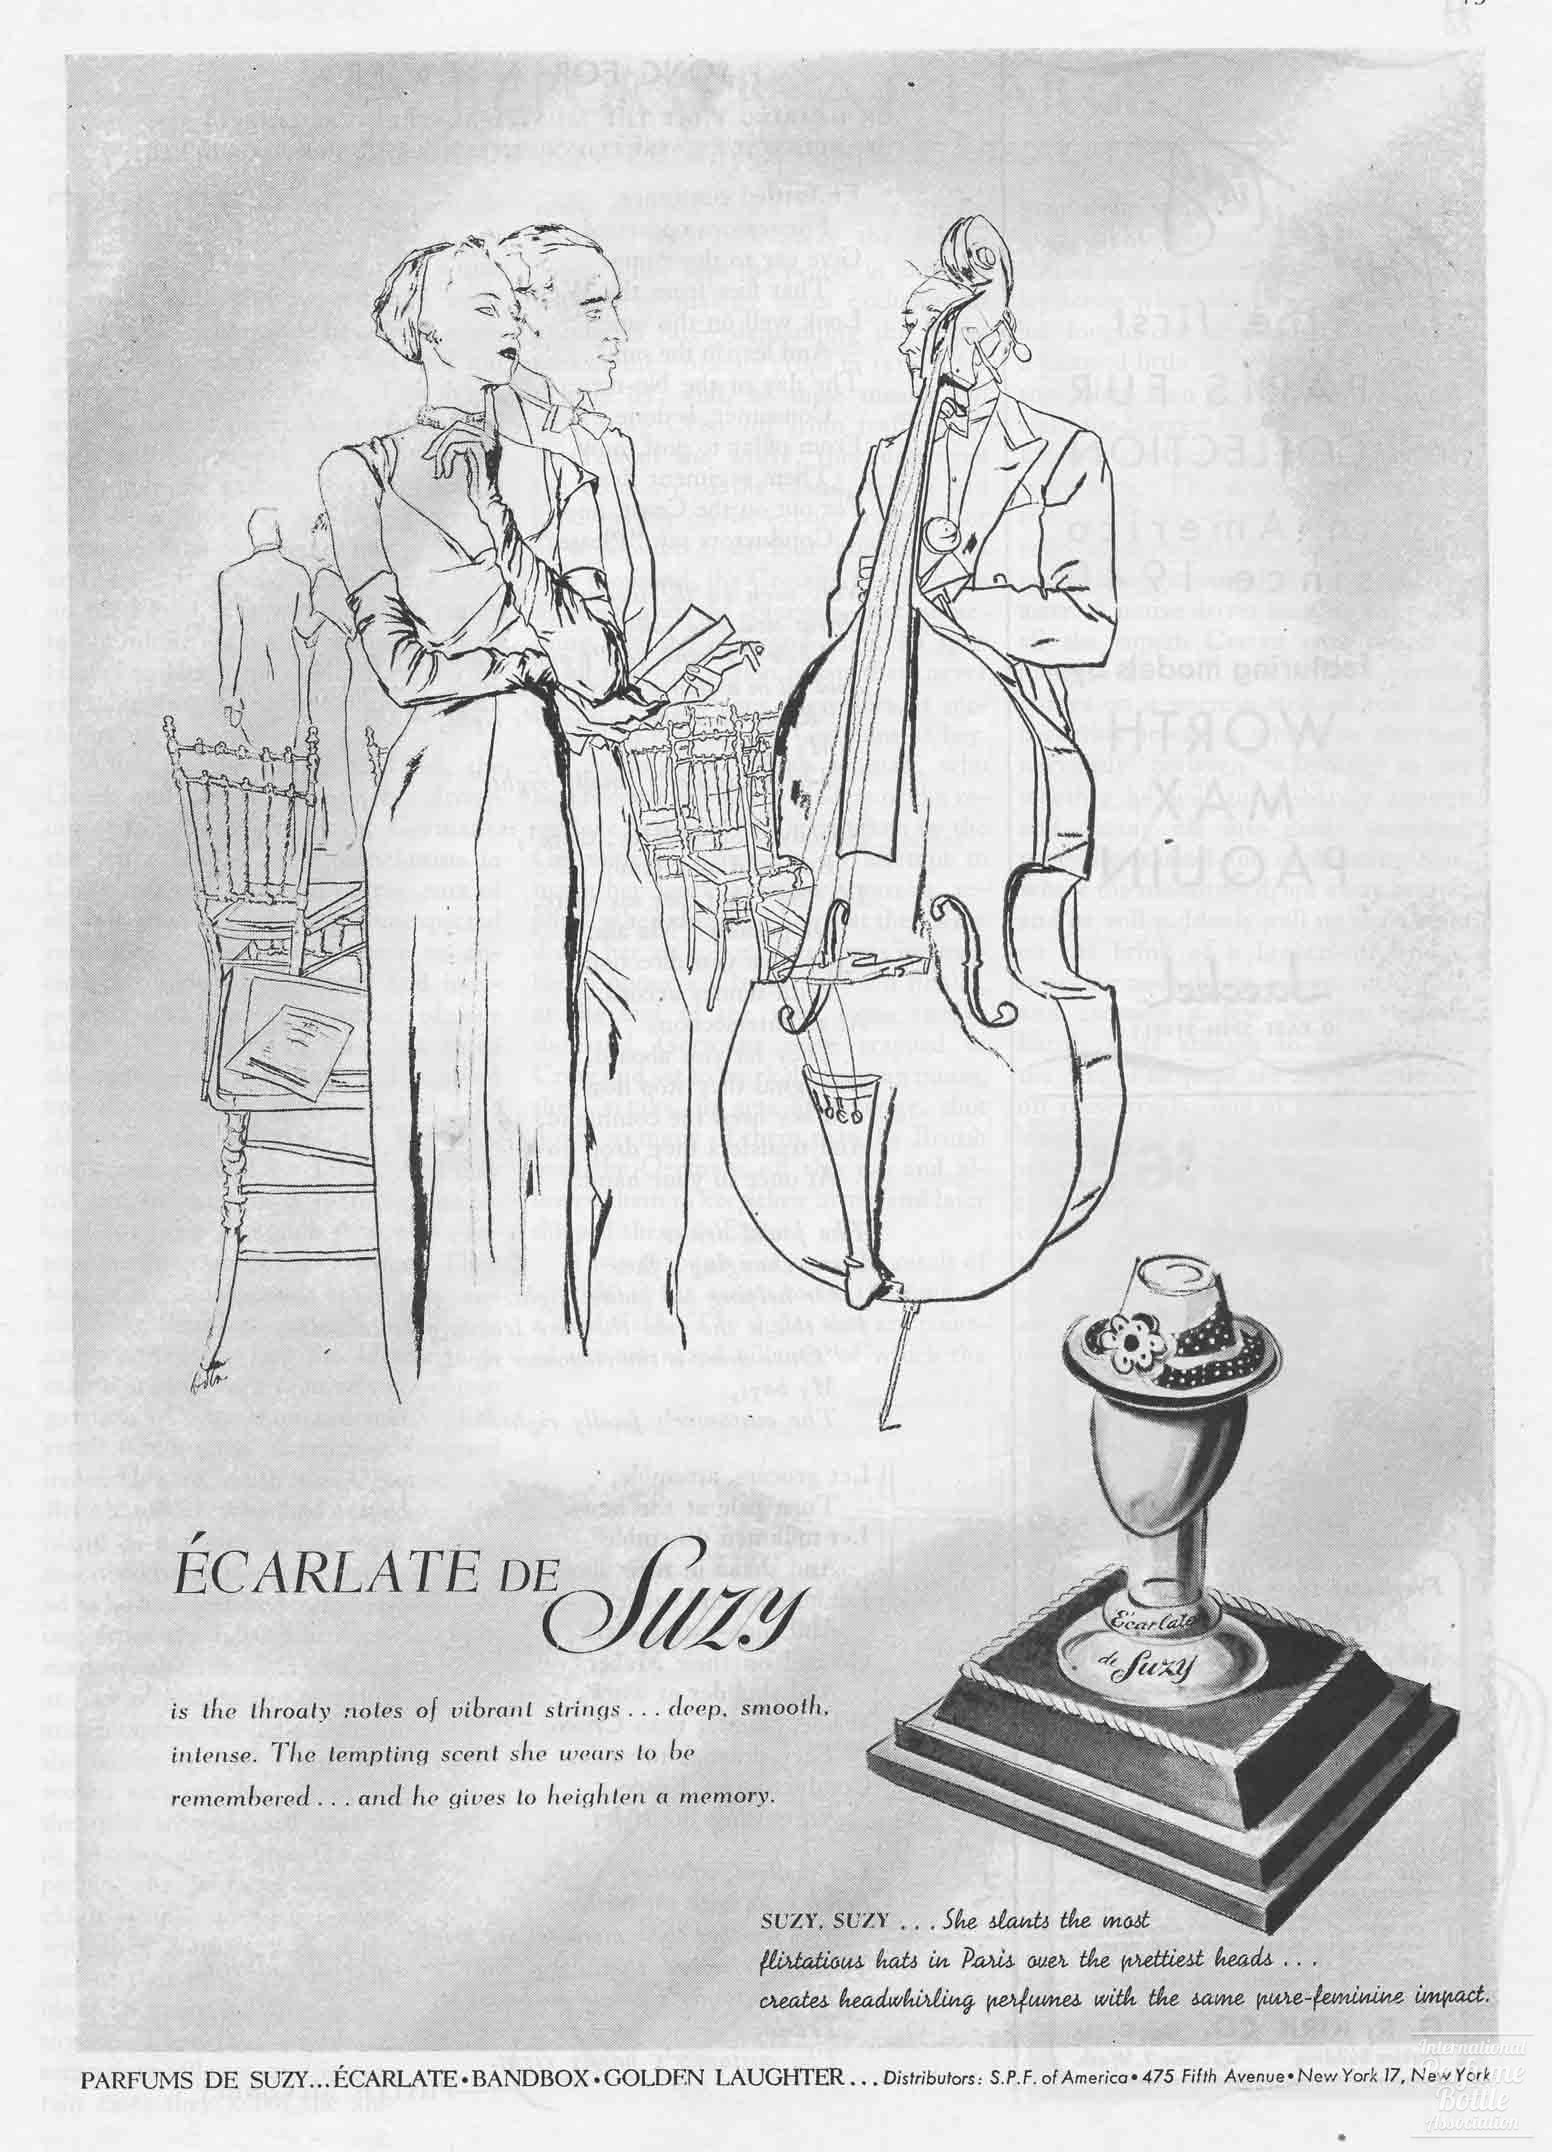 "Ecarlate de Suzy" by Suzy Advertisement - 1945